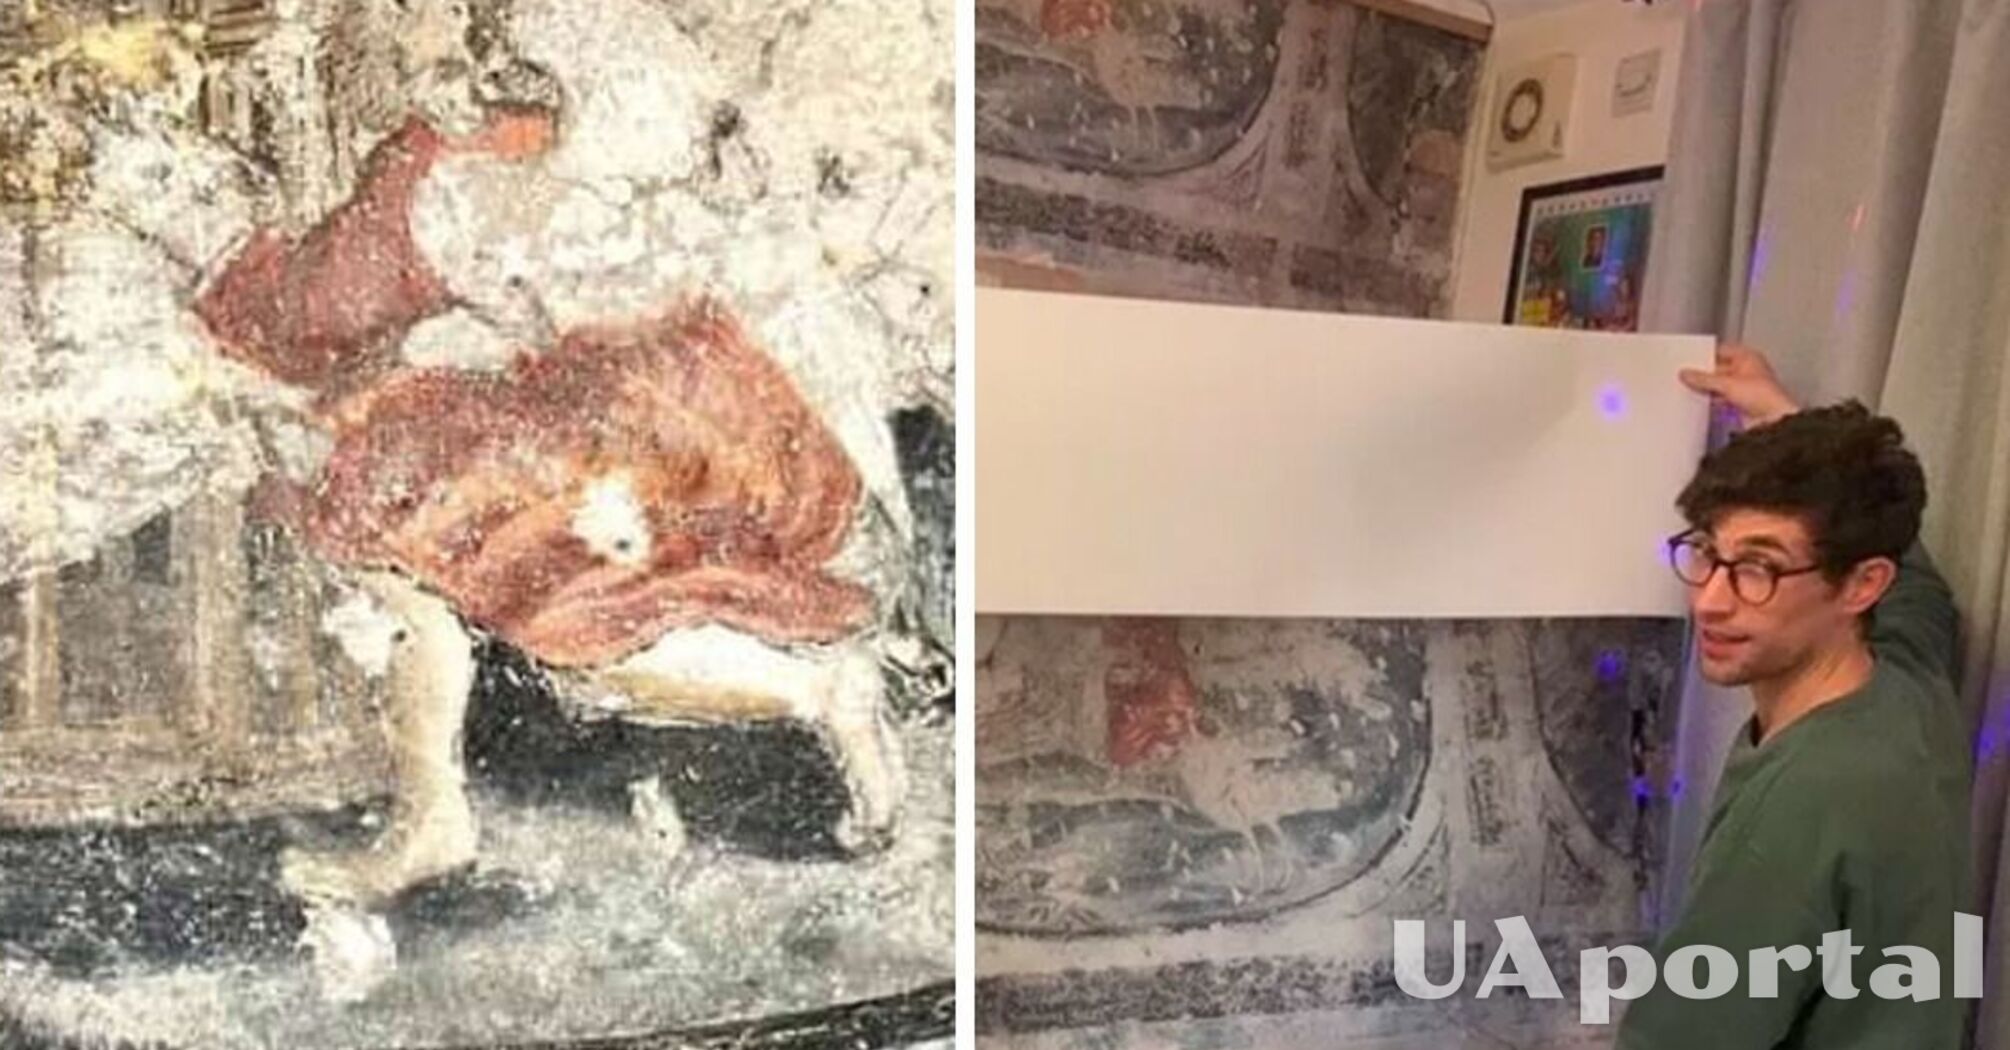 Житель Британии во время ремонта кухни нашел картины в возрасте около 400 лет (фото)